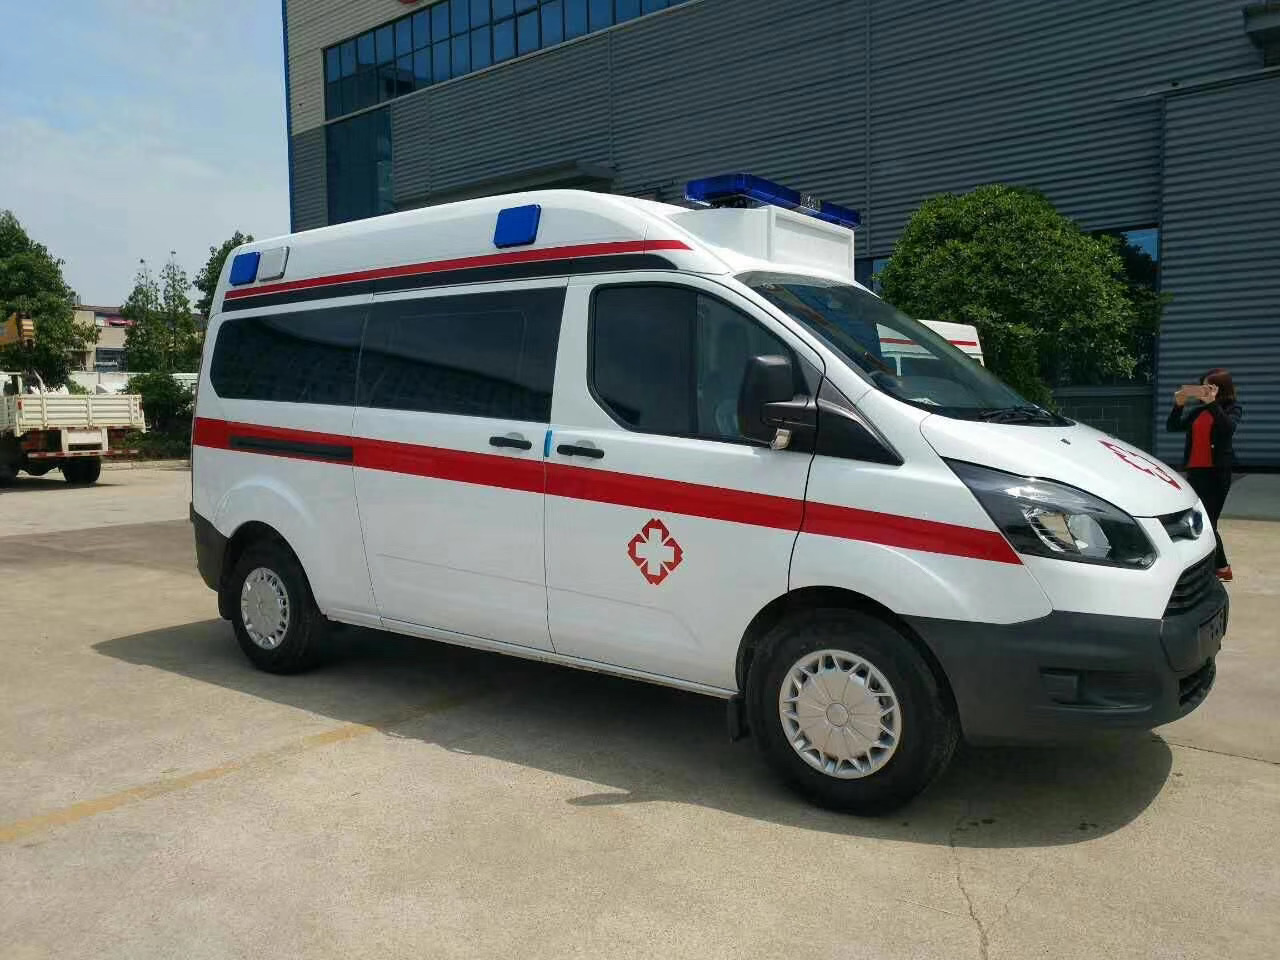 延吉市出院转院救护车